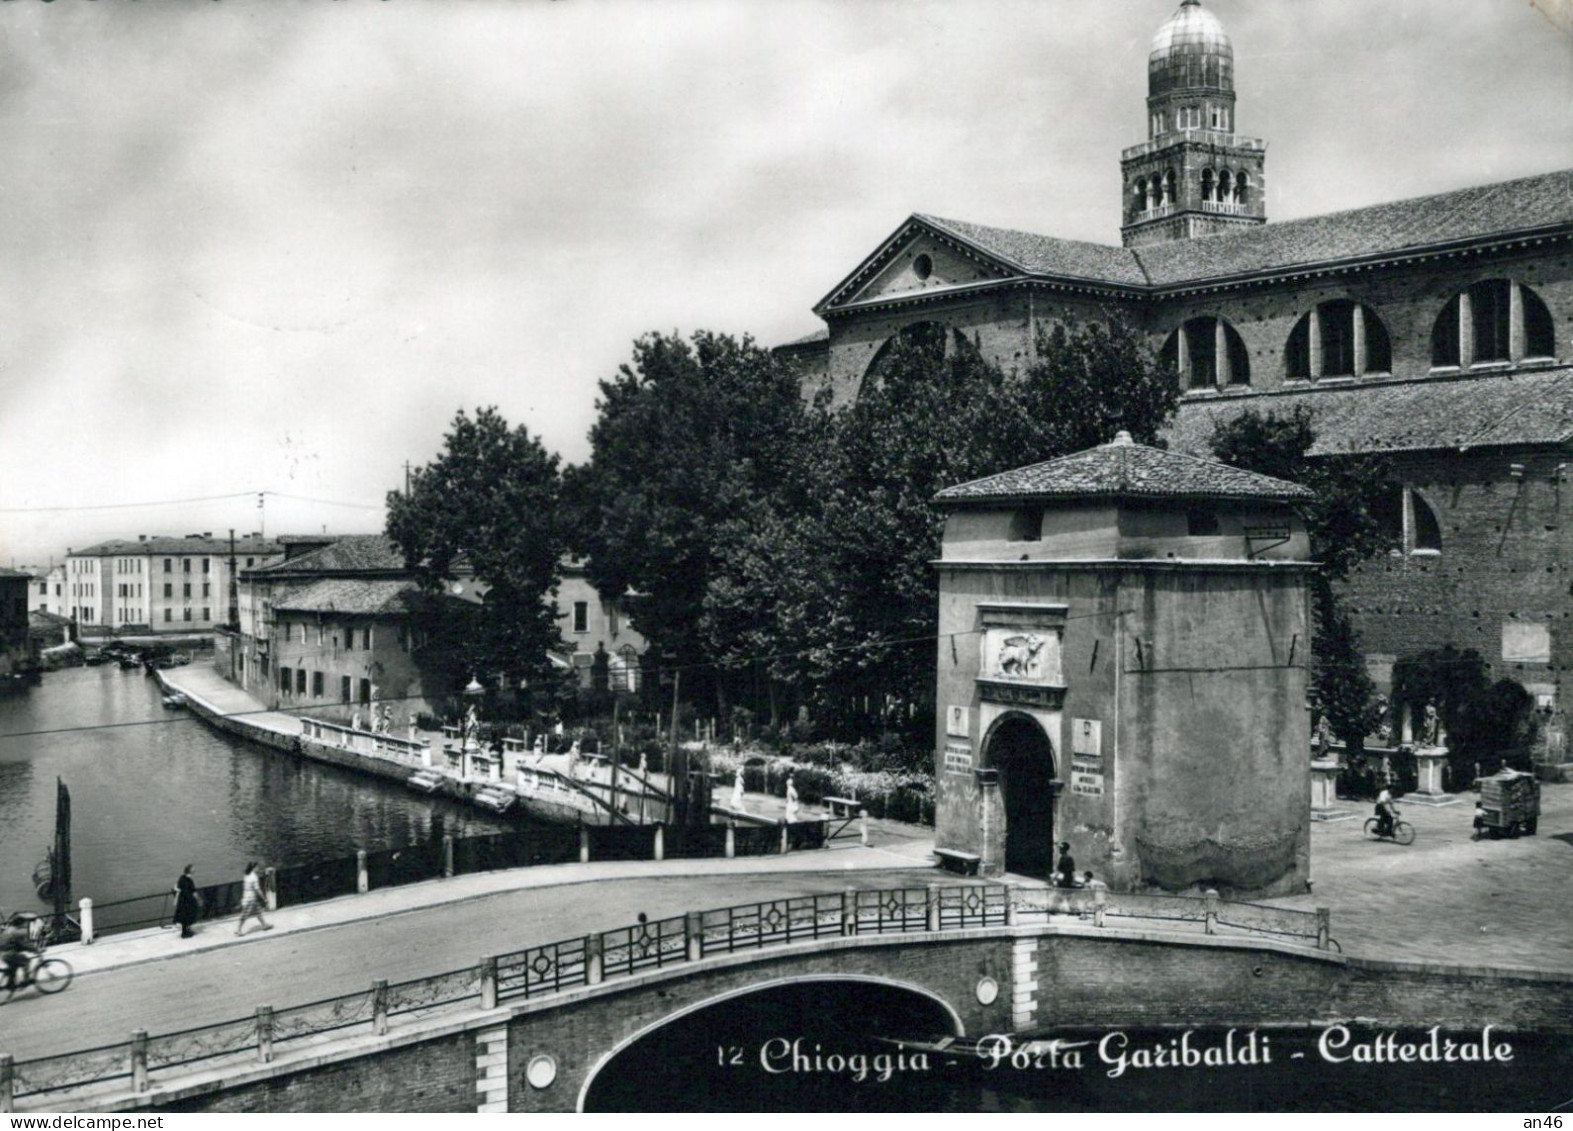 CHIOGGIA - PORTA GARIBALDI - CATTEDRALE  - Vgt1951 - Chioggia